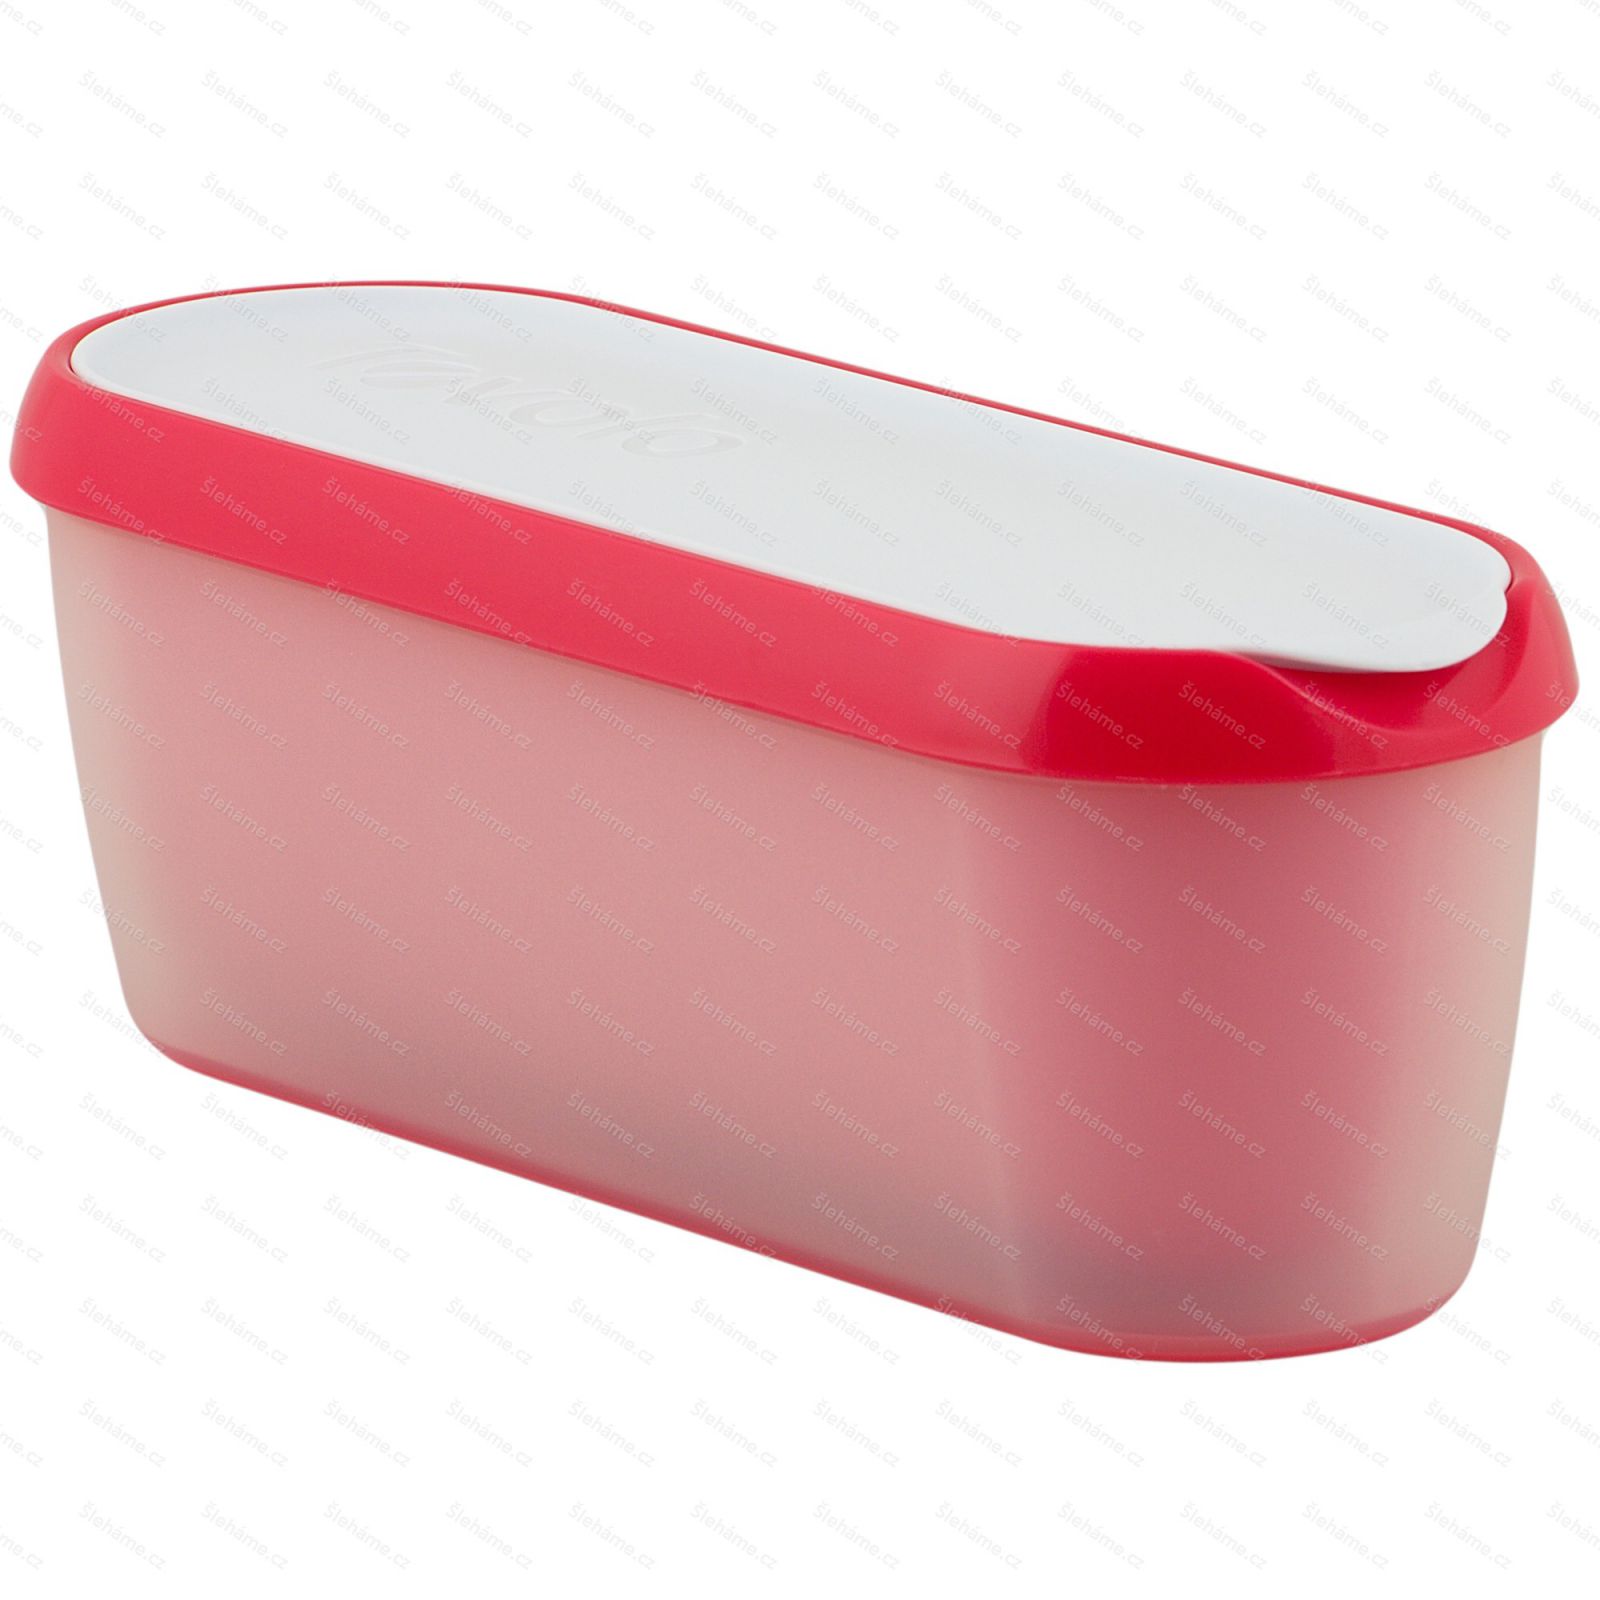 Ice cream tub Tovolo GLIDE-A-SCOOP 1.4 l, strawberry sorbet - main view